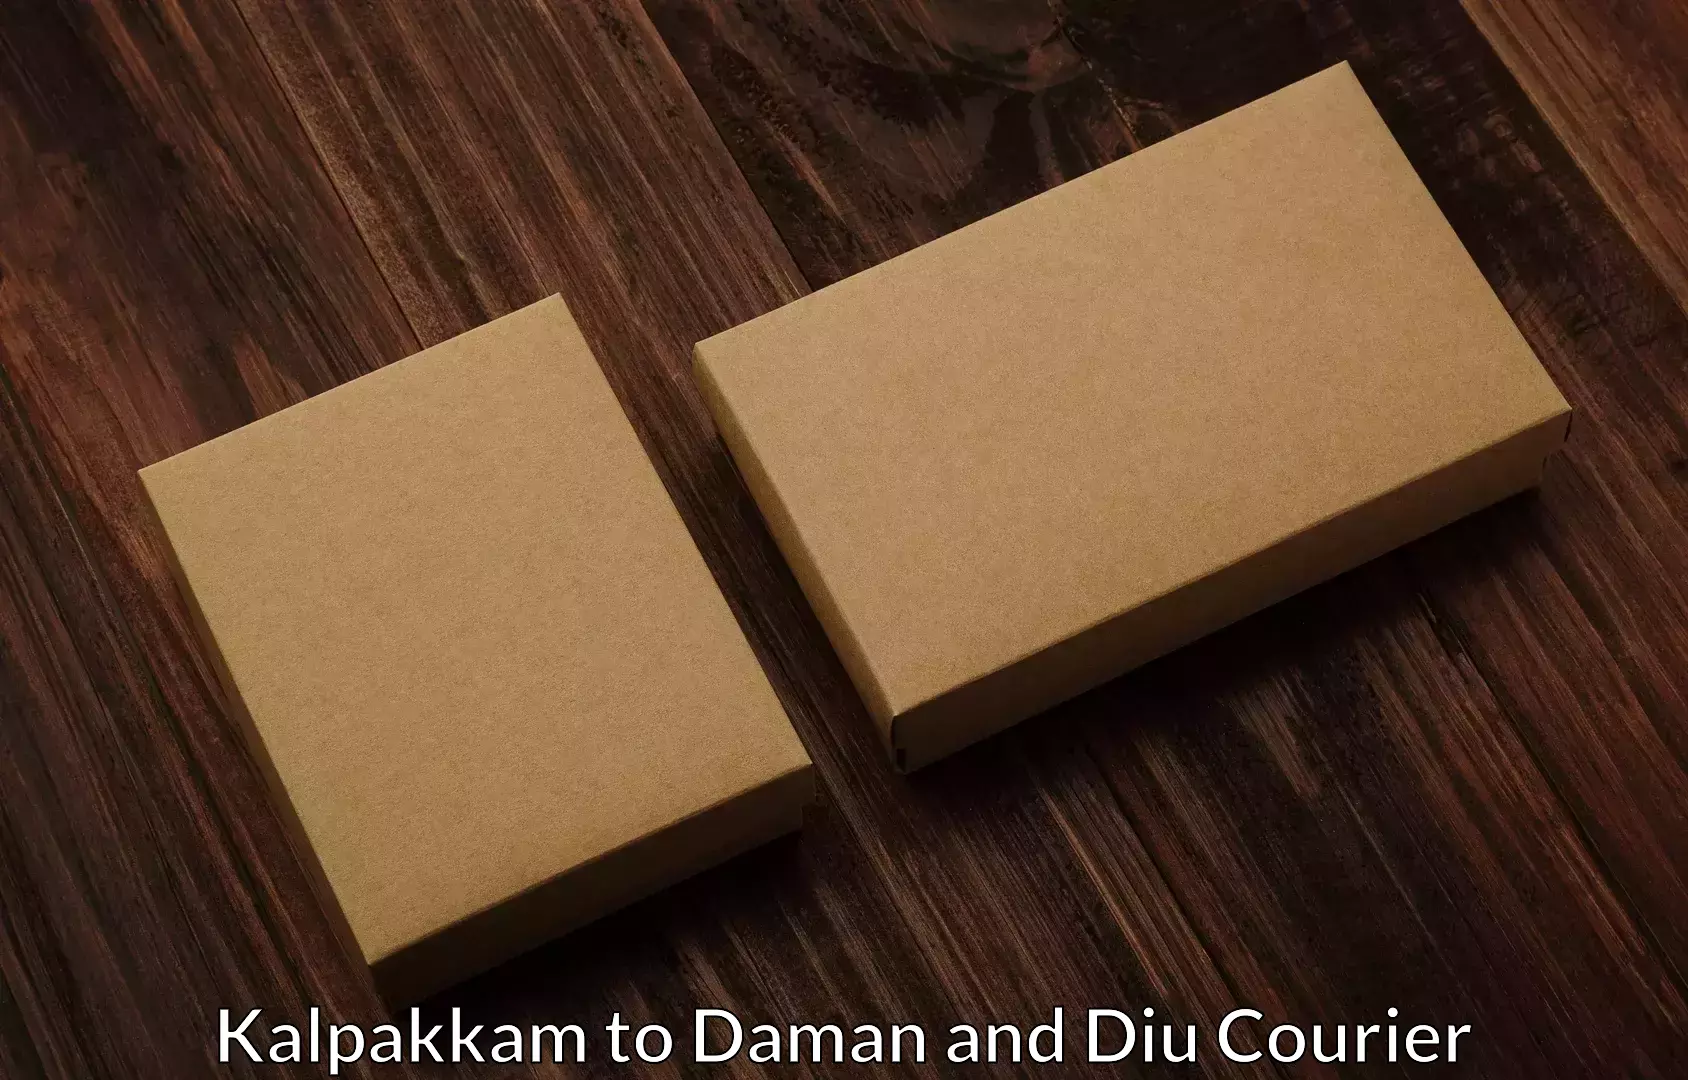 Skilled furniture transporters Kalpakkam to Daman and Diu